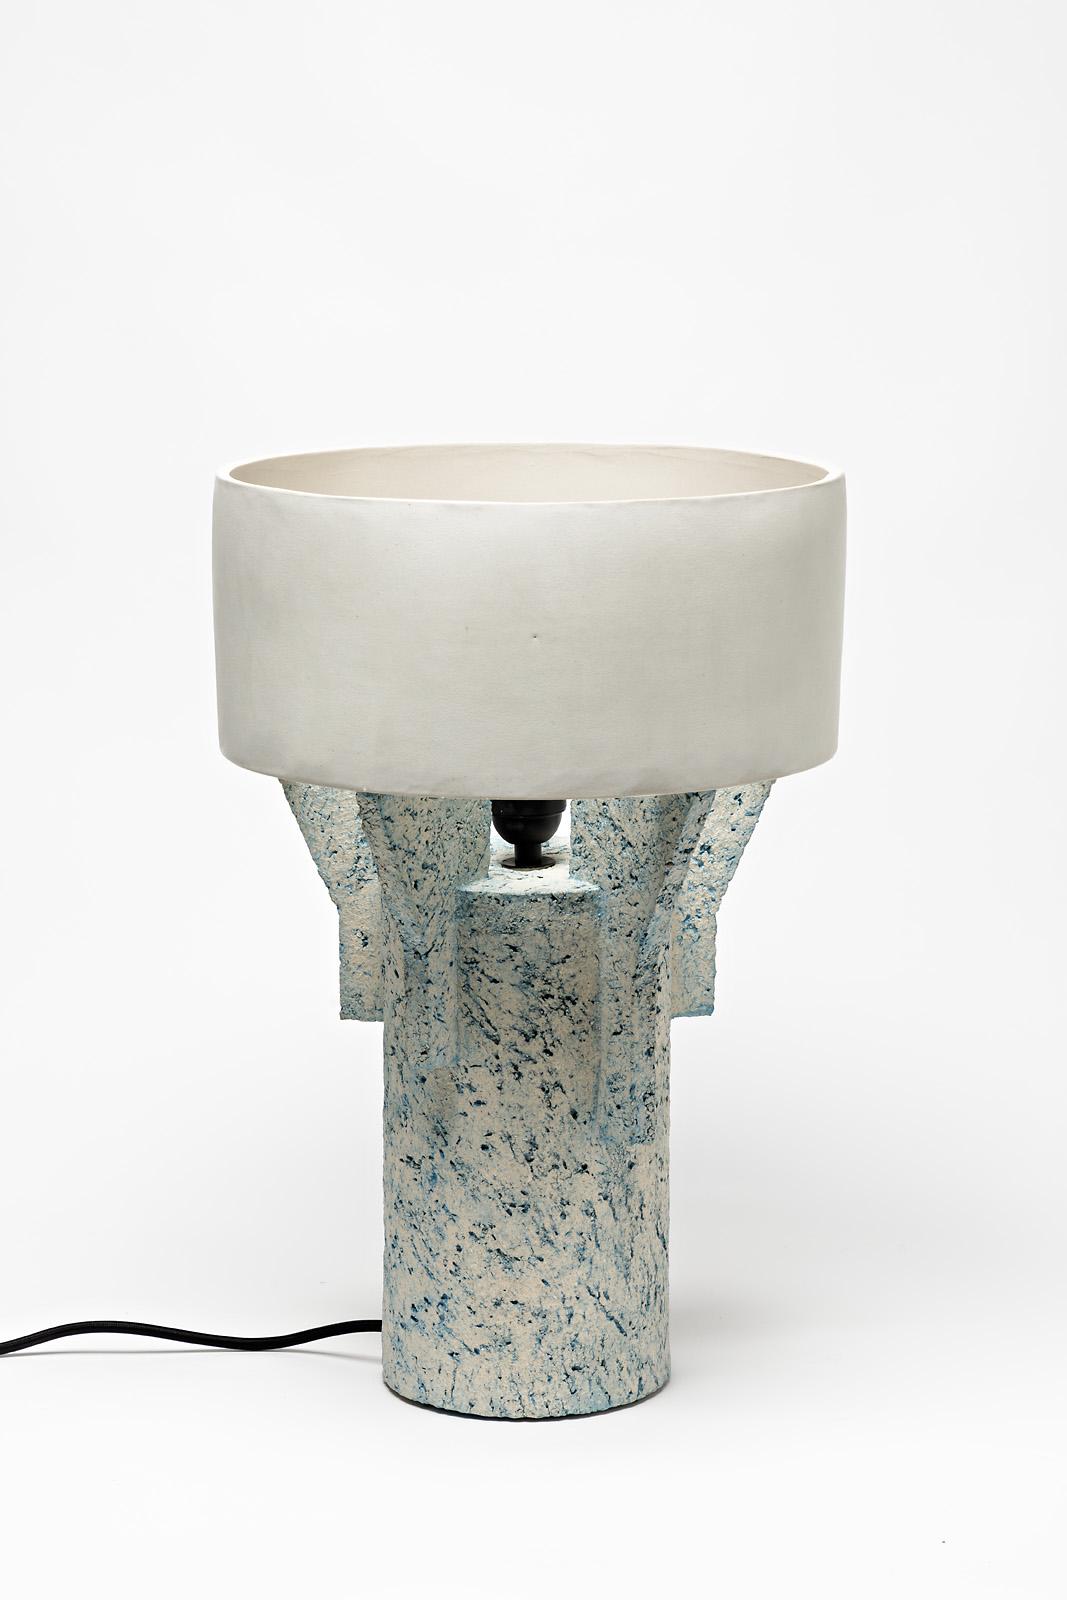 Eine Tischlampe aus Keramik von Denis Castaing mit weißer Glasur.
Der Sockel und der Lampenschirm sind aus Keramik.
Verkauft mit einem europäischen elektrischen System.
Perfekter Originalzustand,
2019.
Unter dem Sockel signiert.